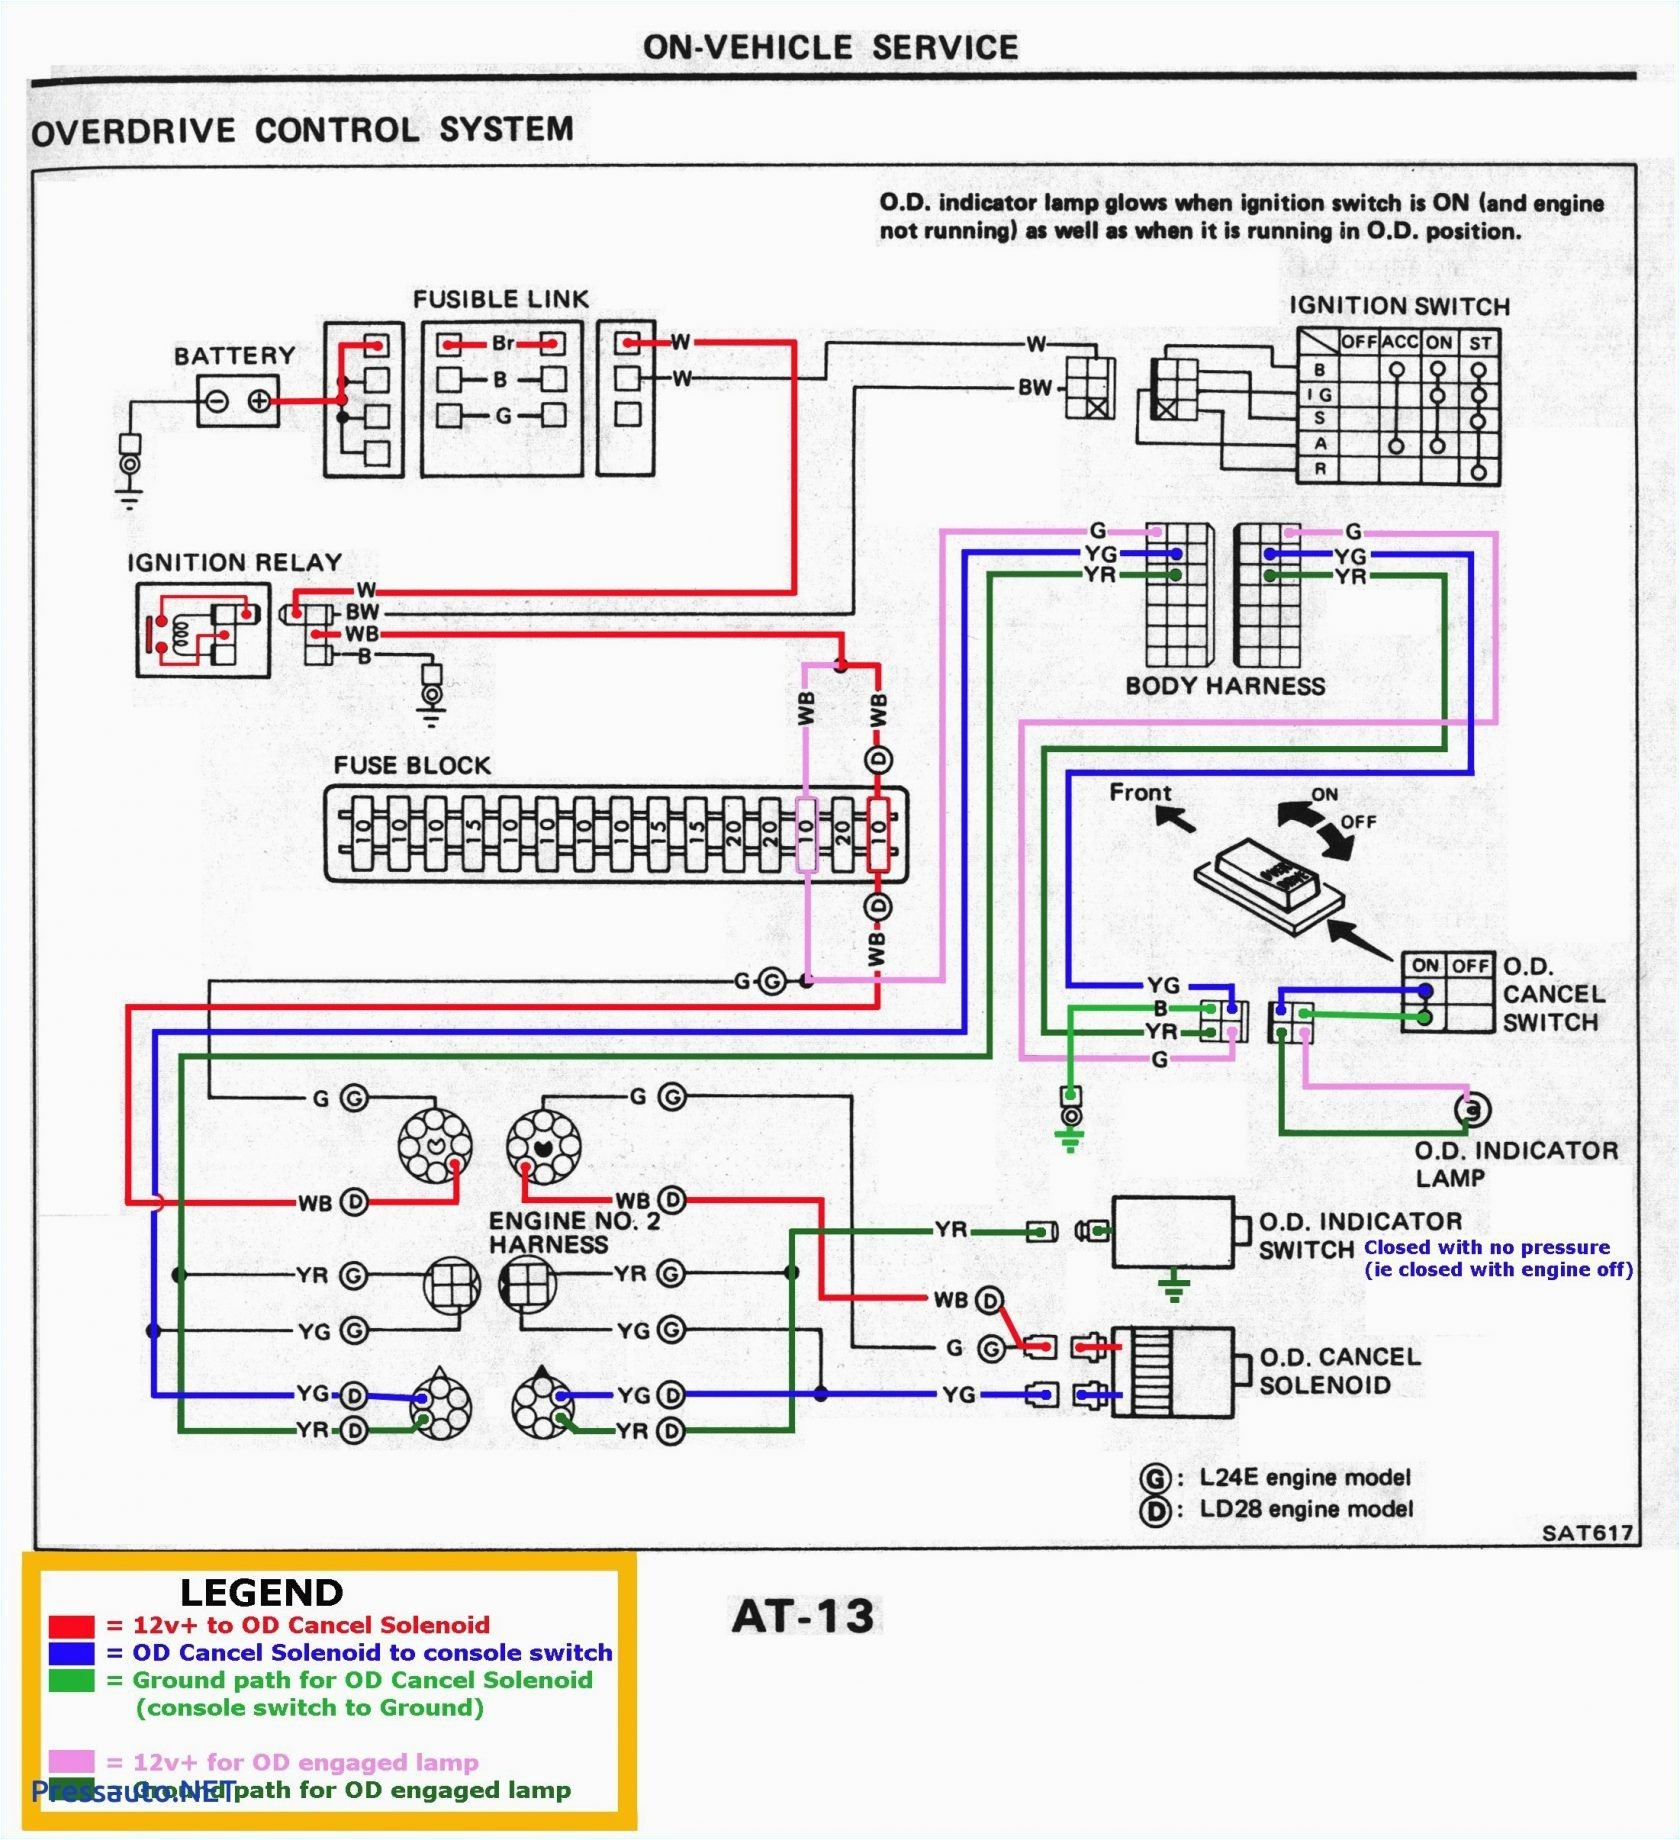 champion 7eca wiring diagram wiring diagram article review champion trailer plug wiring diagram